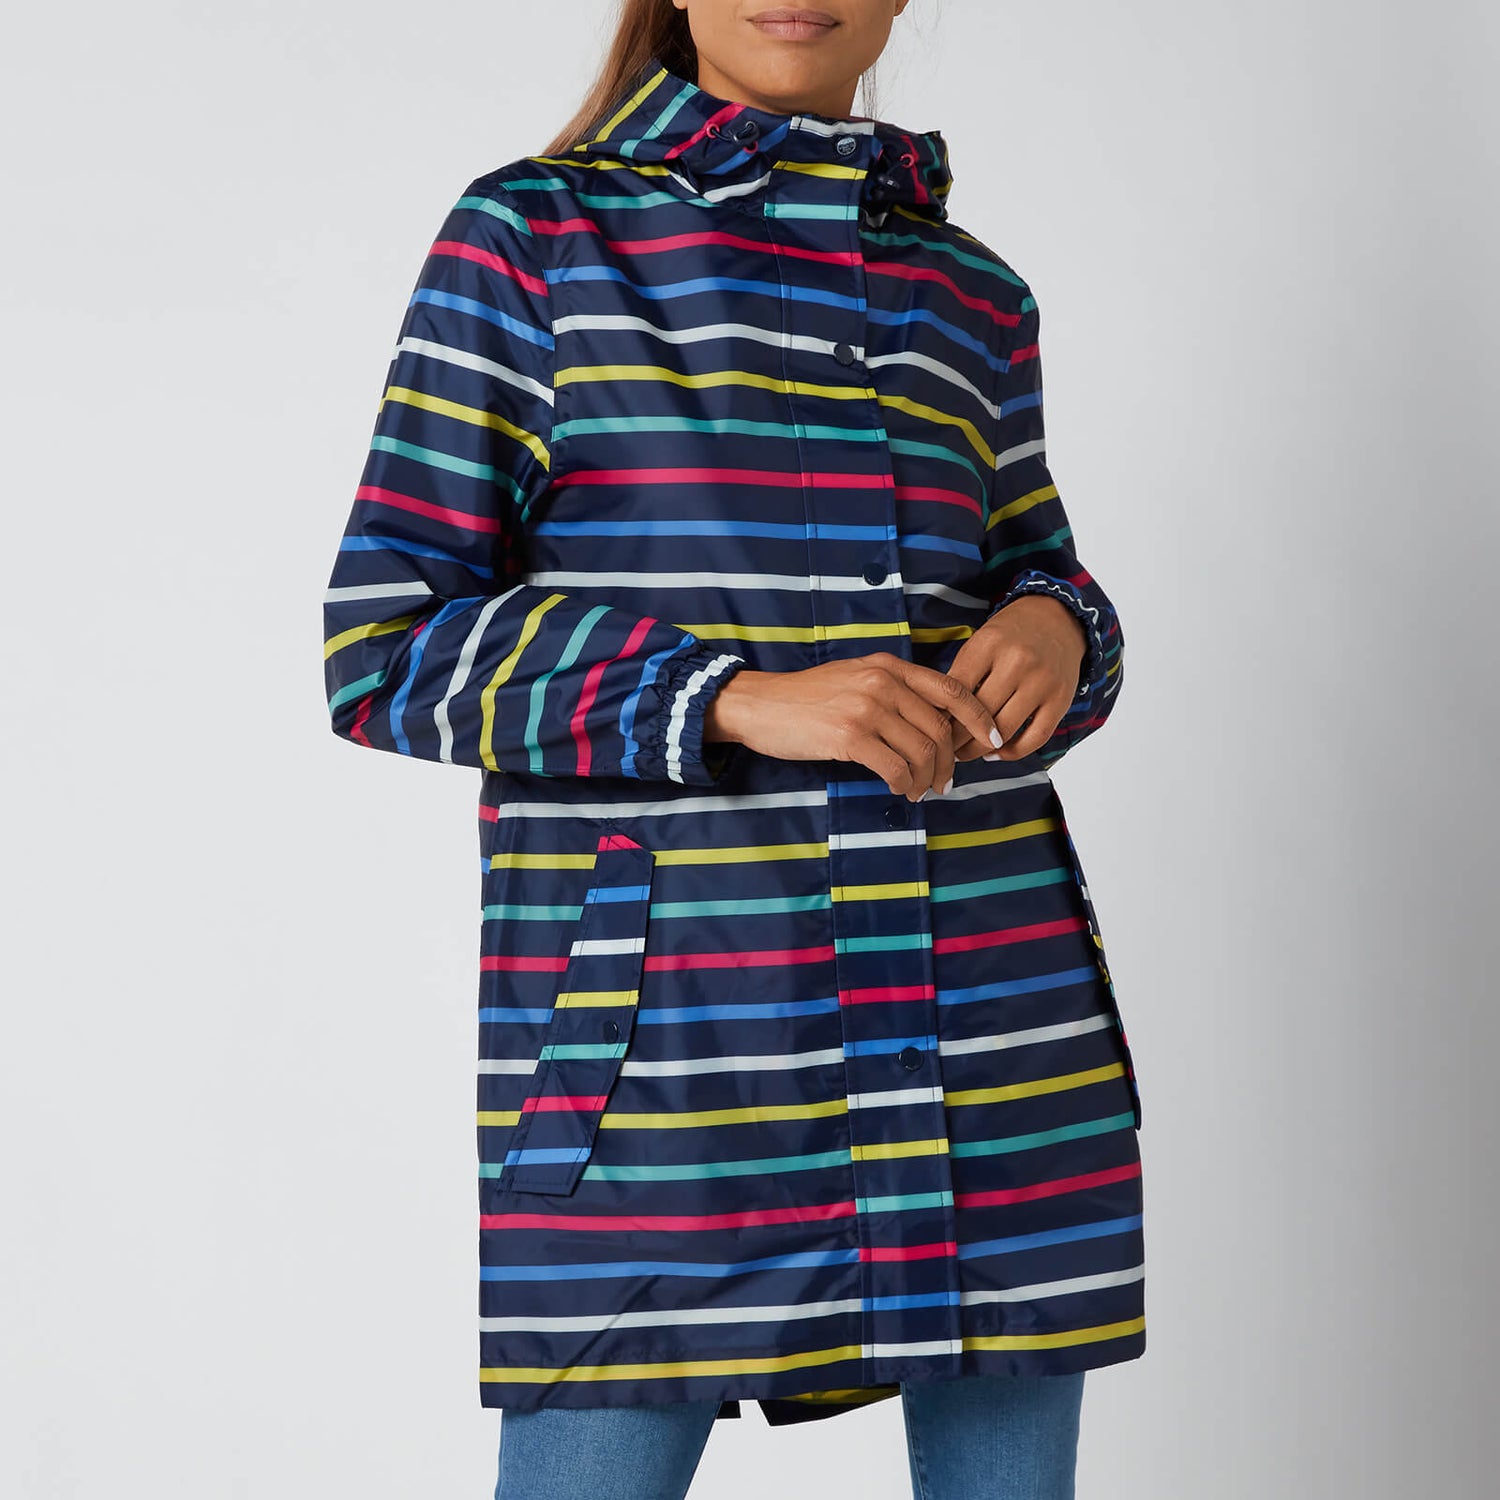 Joules Women's Golightly Packable Jacket - Multi Stripe